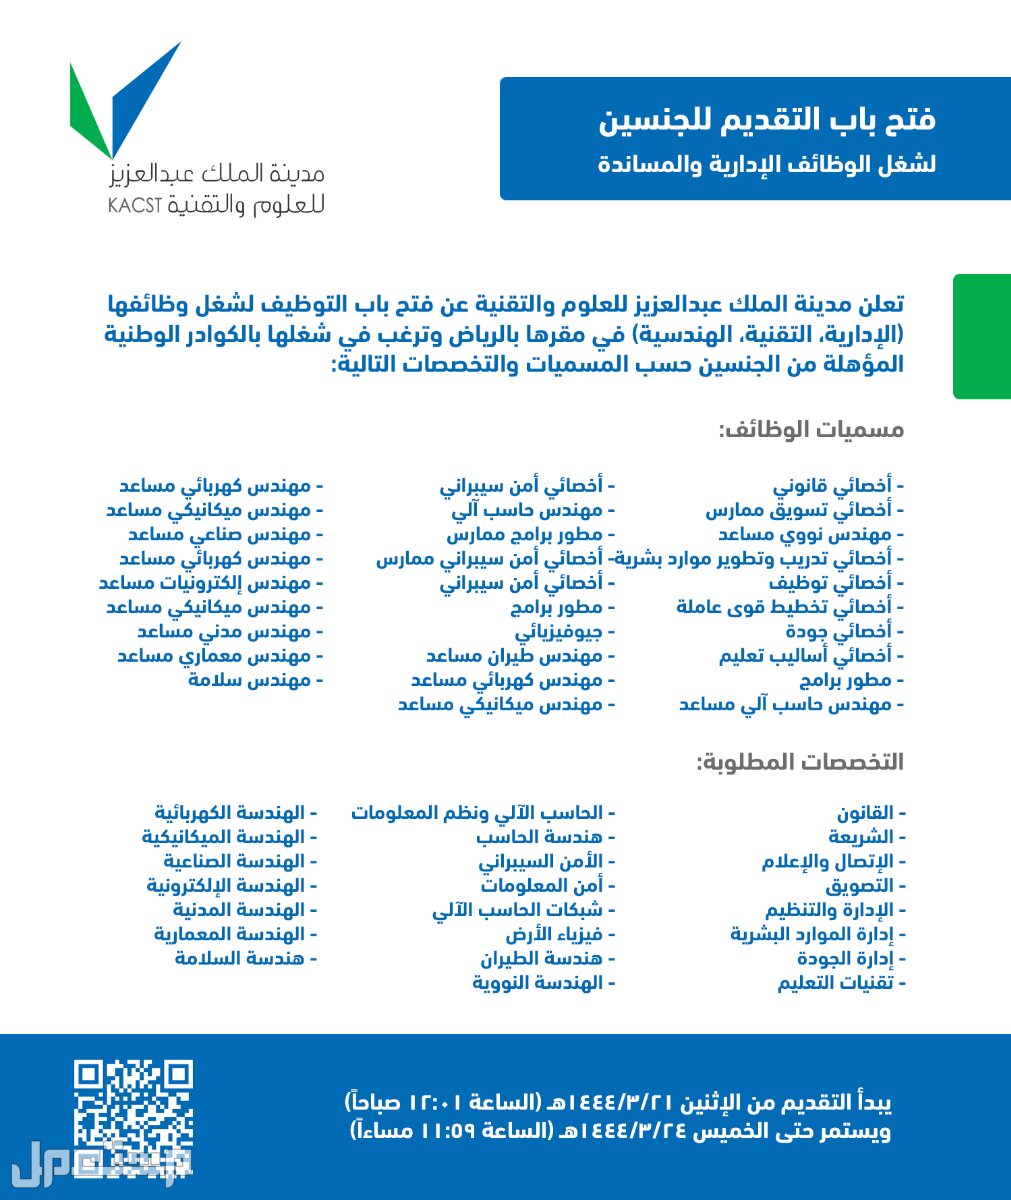 كل ما تحتاج إلى معرفته حول وظائف مدينة الملك عبدالعزيز للعلوم والتقنية في سوريا وظائف مدينة الملك عبدالعزيز للعلوم والتقنية